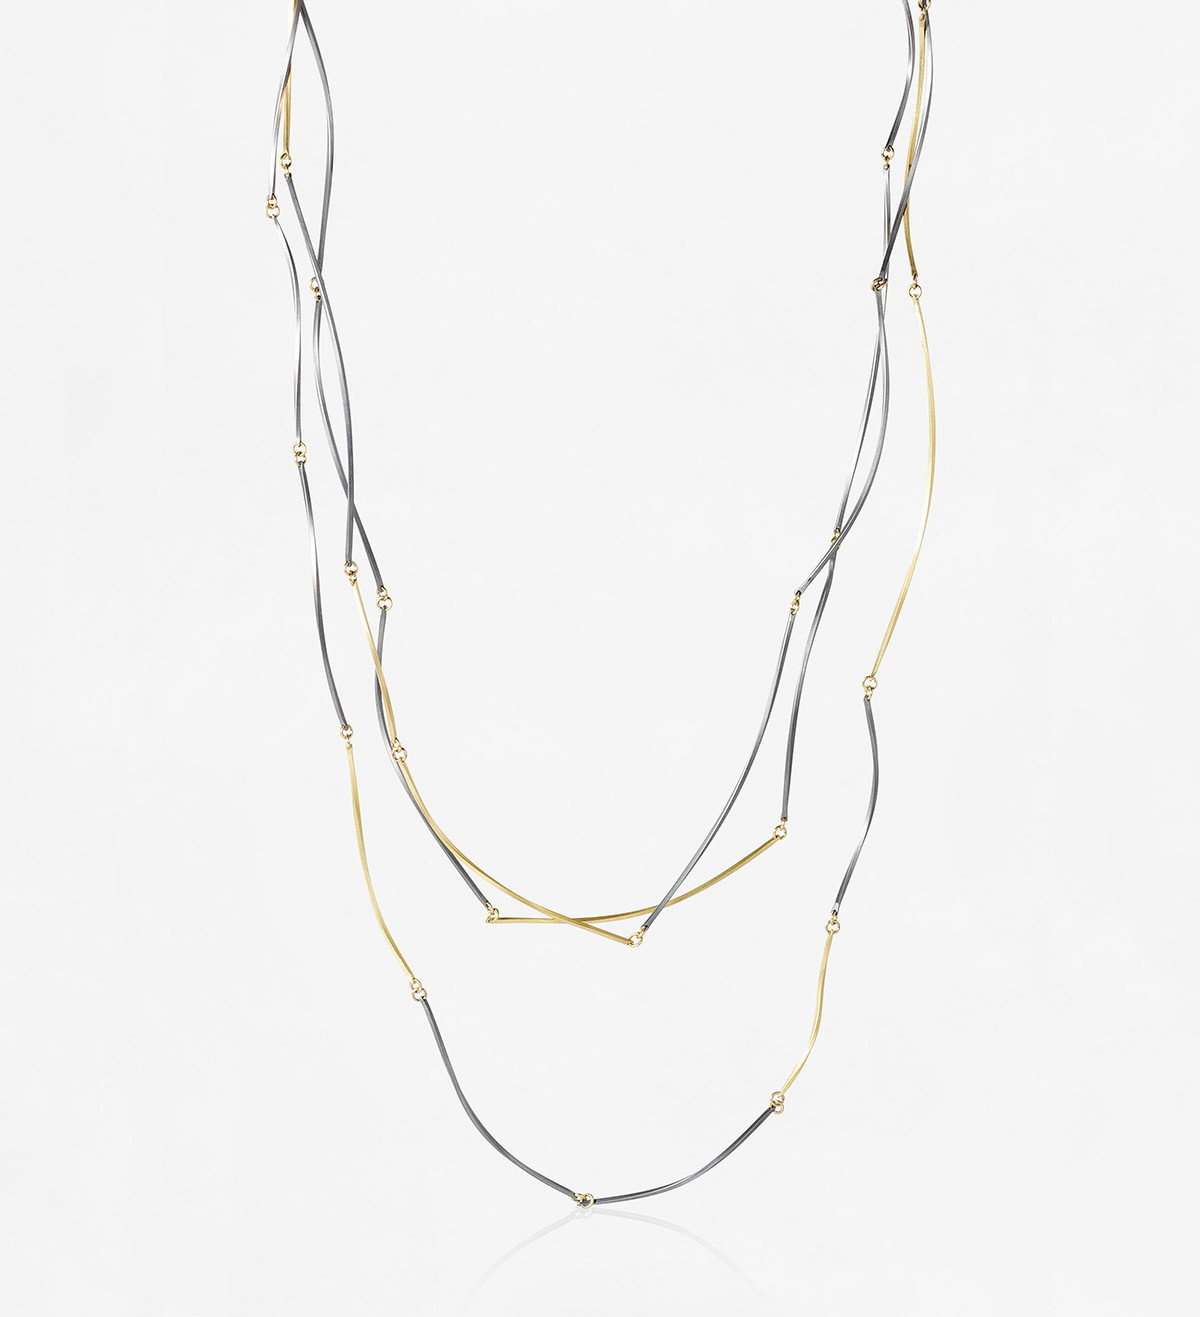 18k gold and titanium necklace Pinassa 258cm